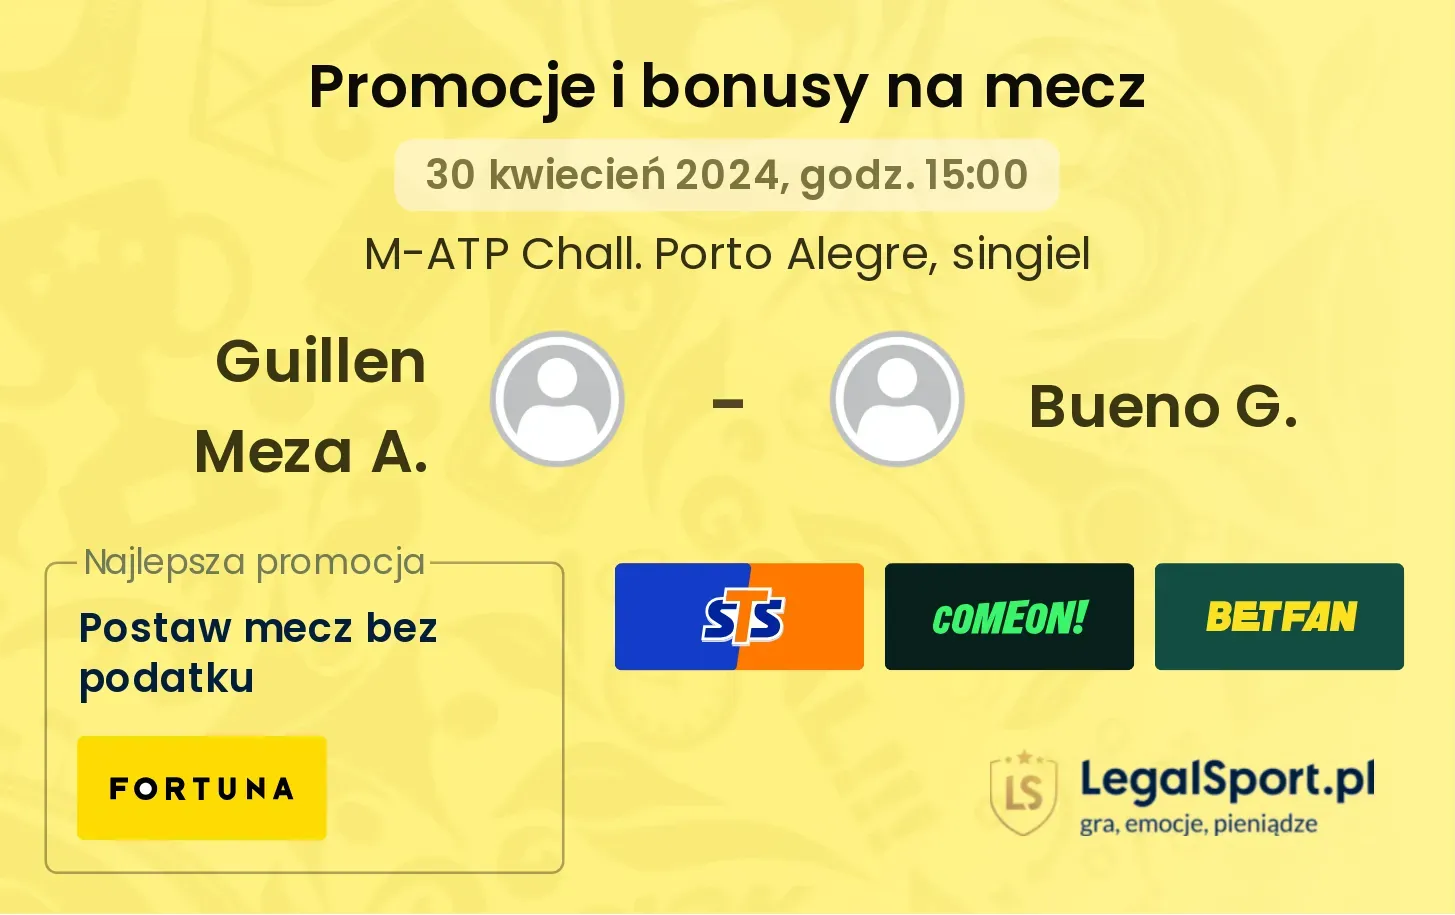 Guillen Meza A. - Bueno G. promocje bonusy na mecz